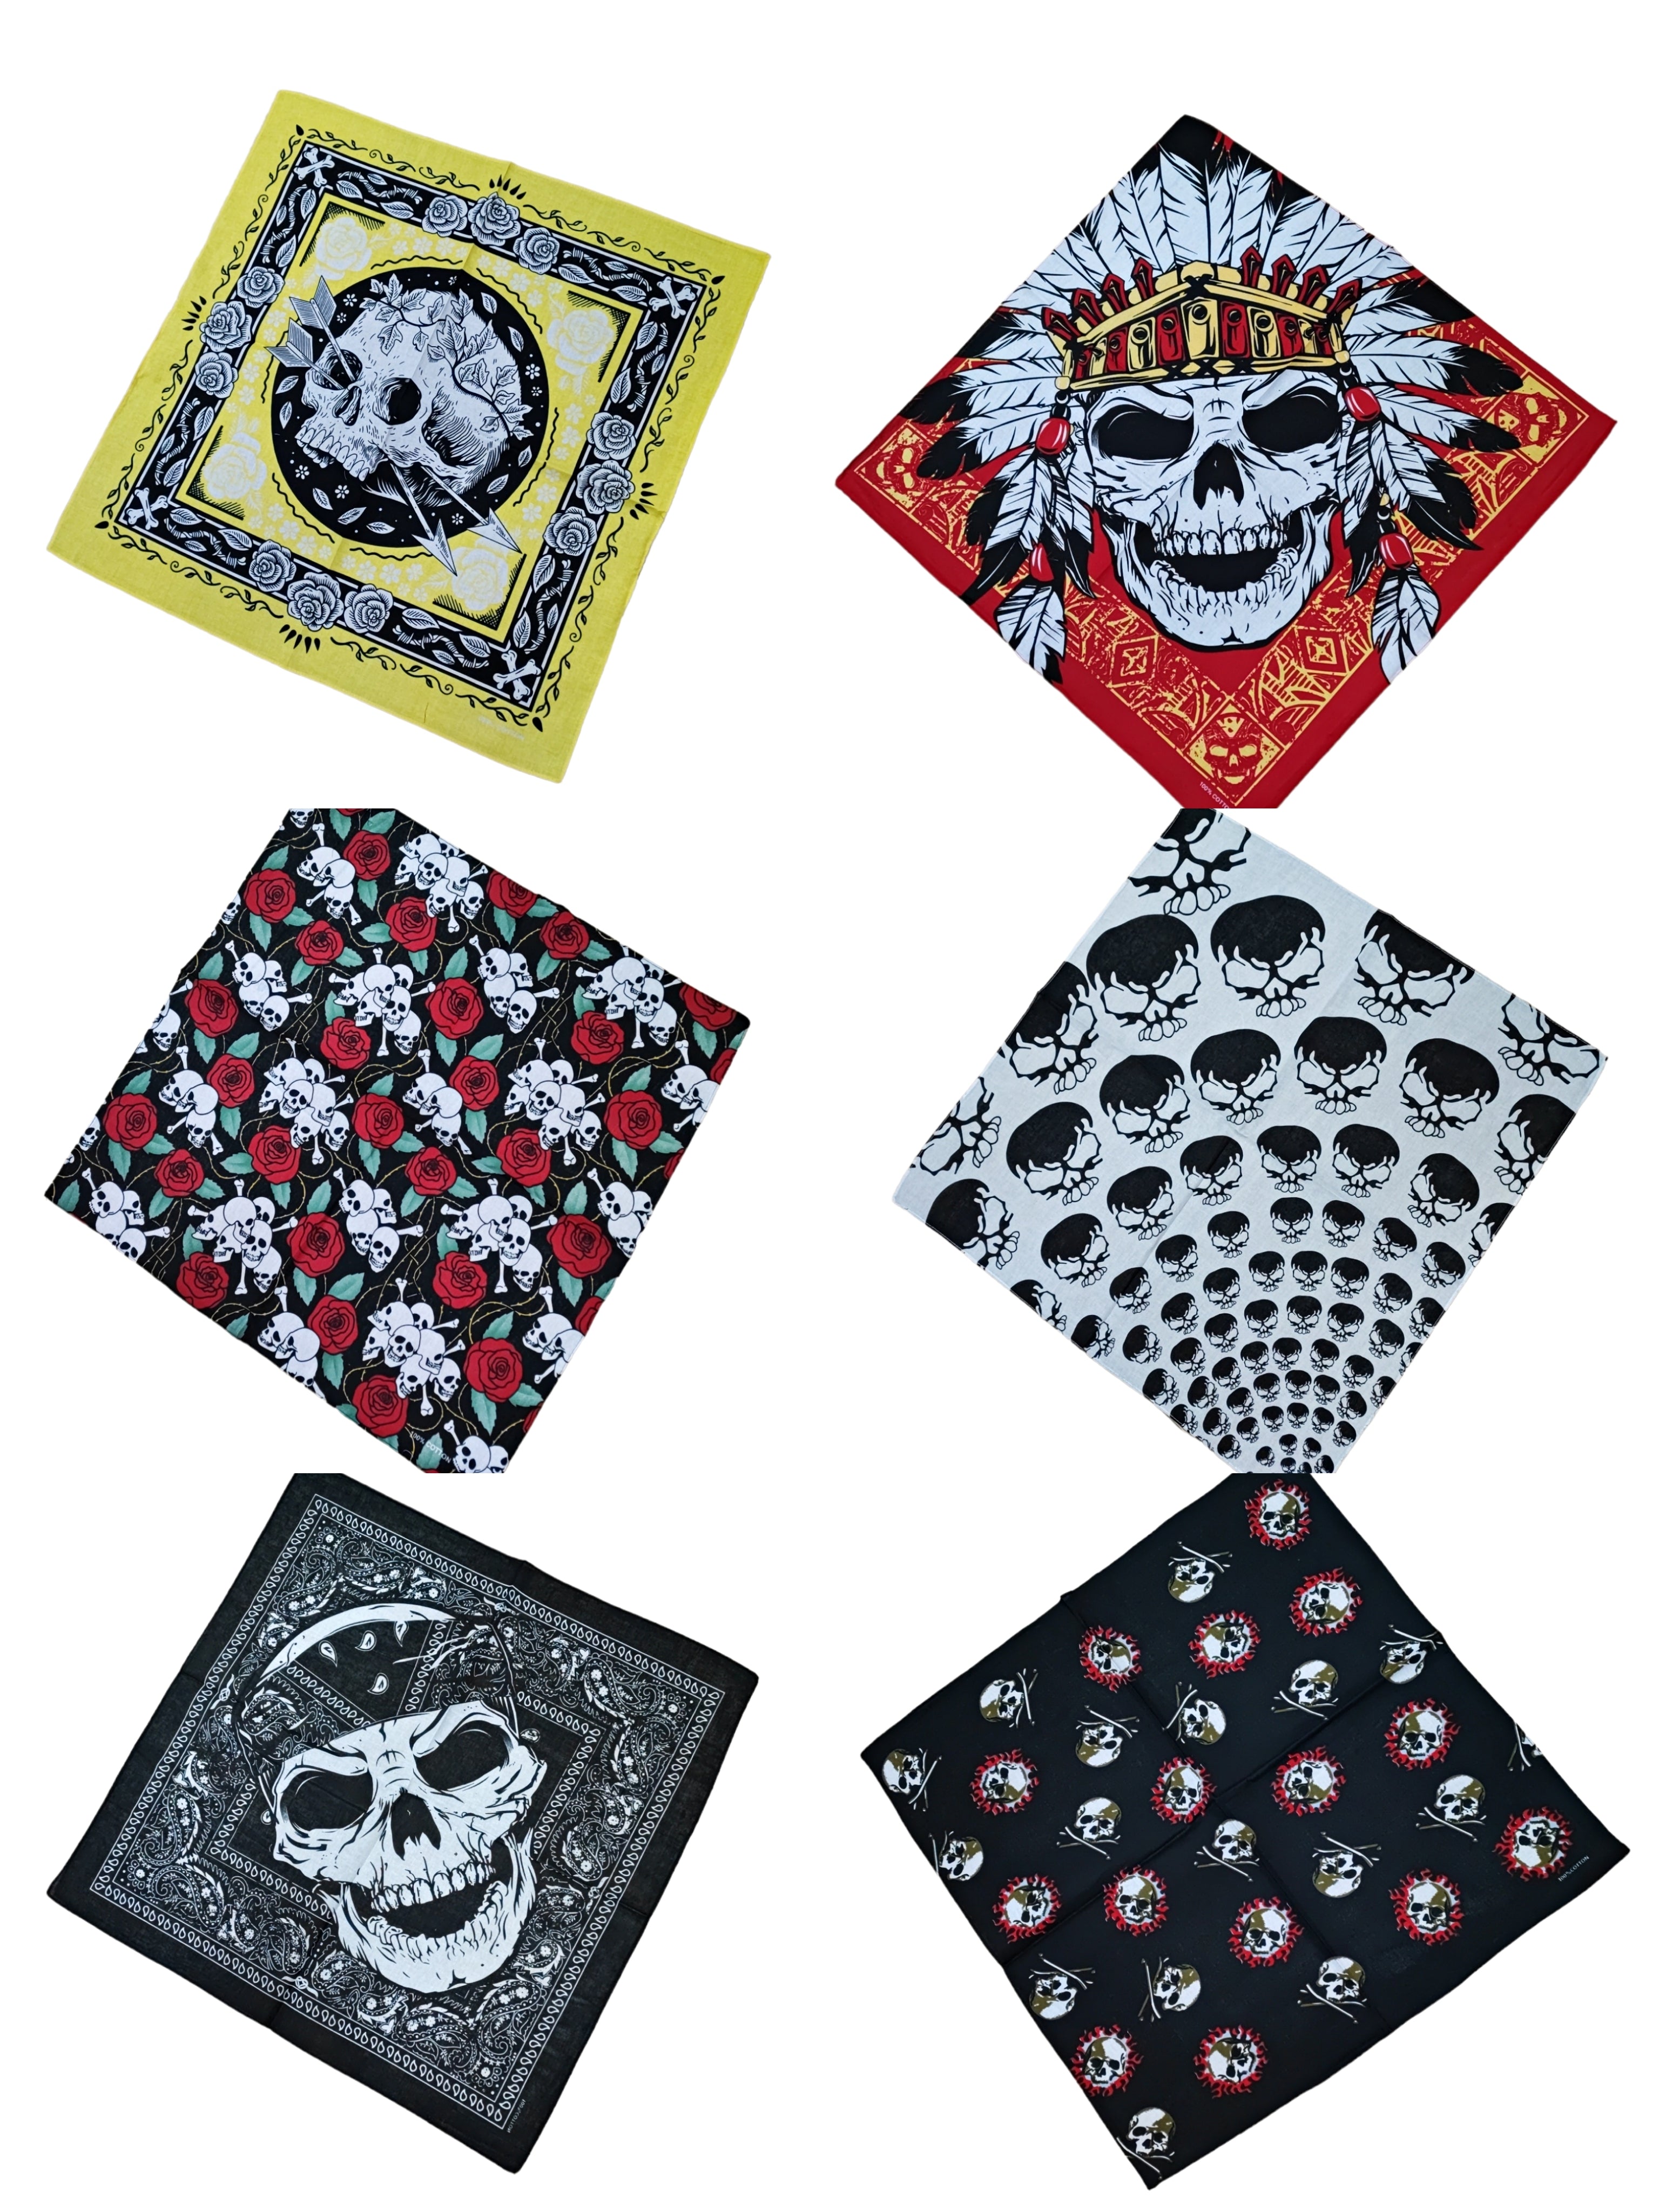 Cotton bandana with skull pattern (x12)